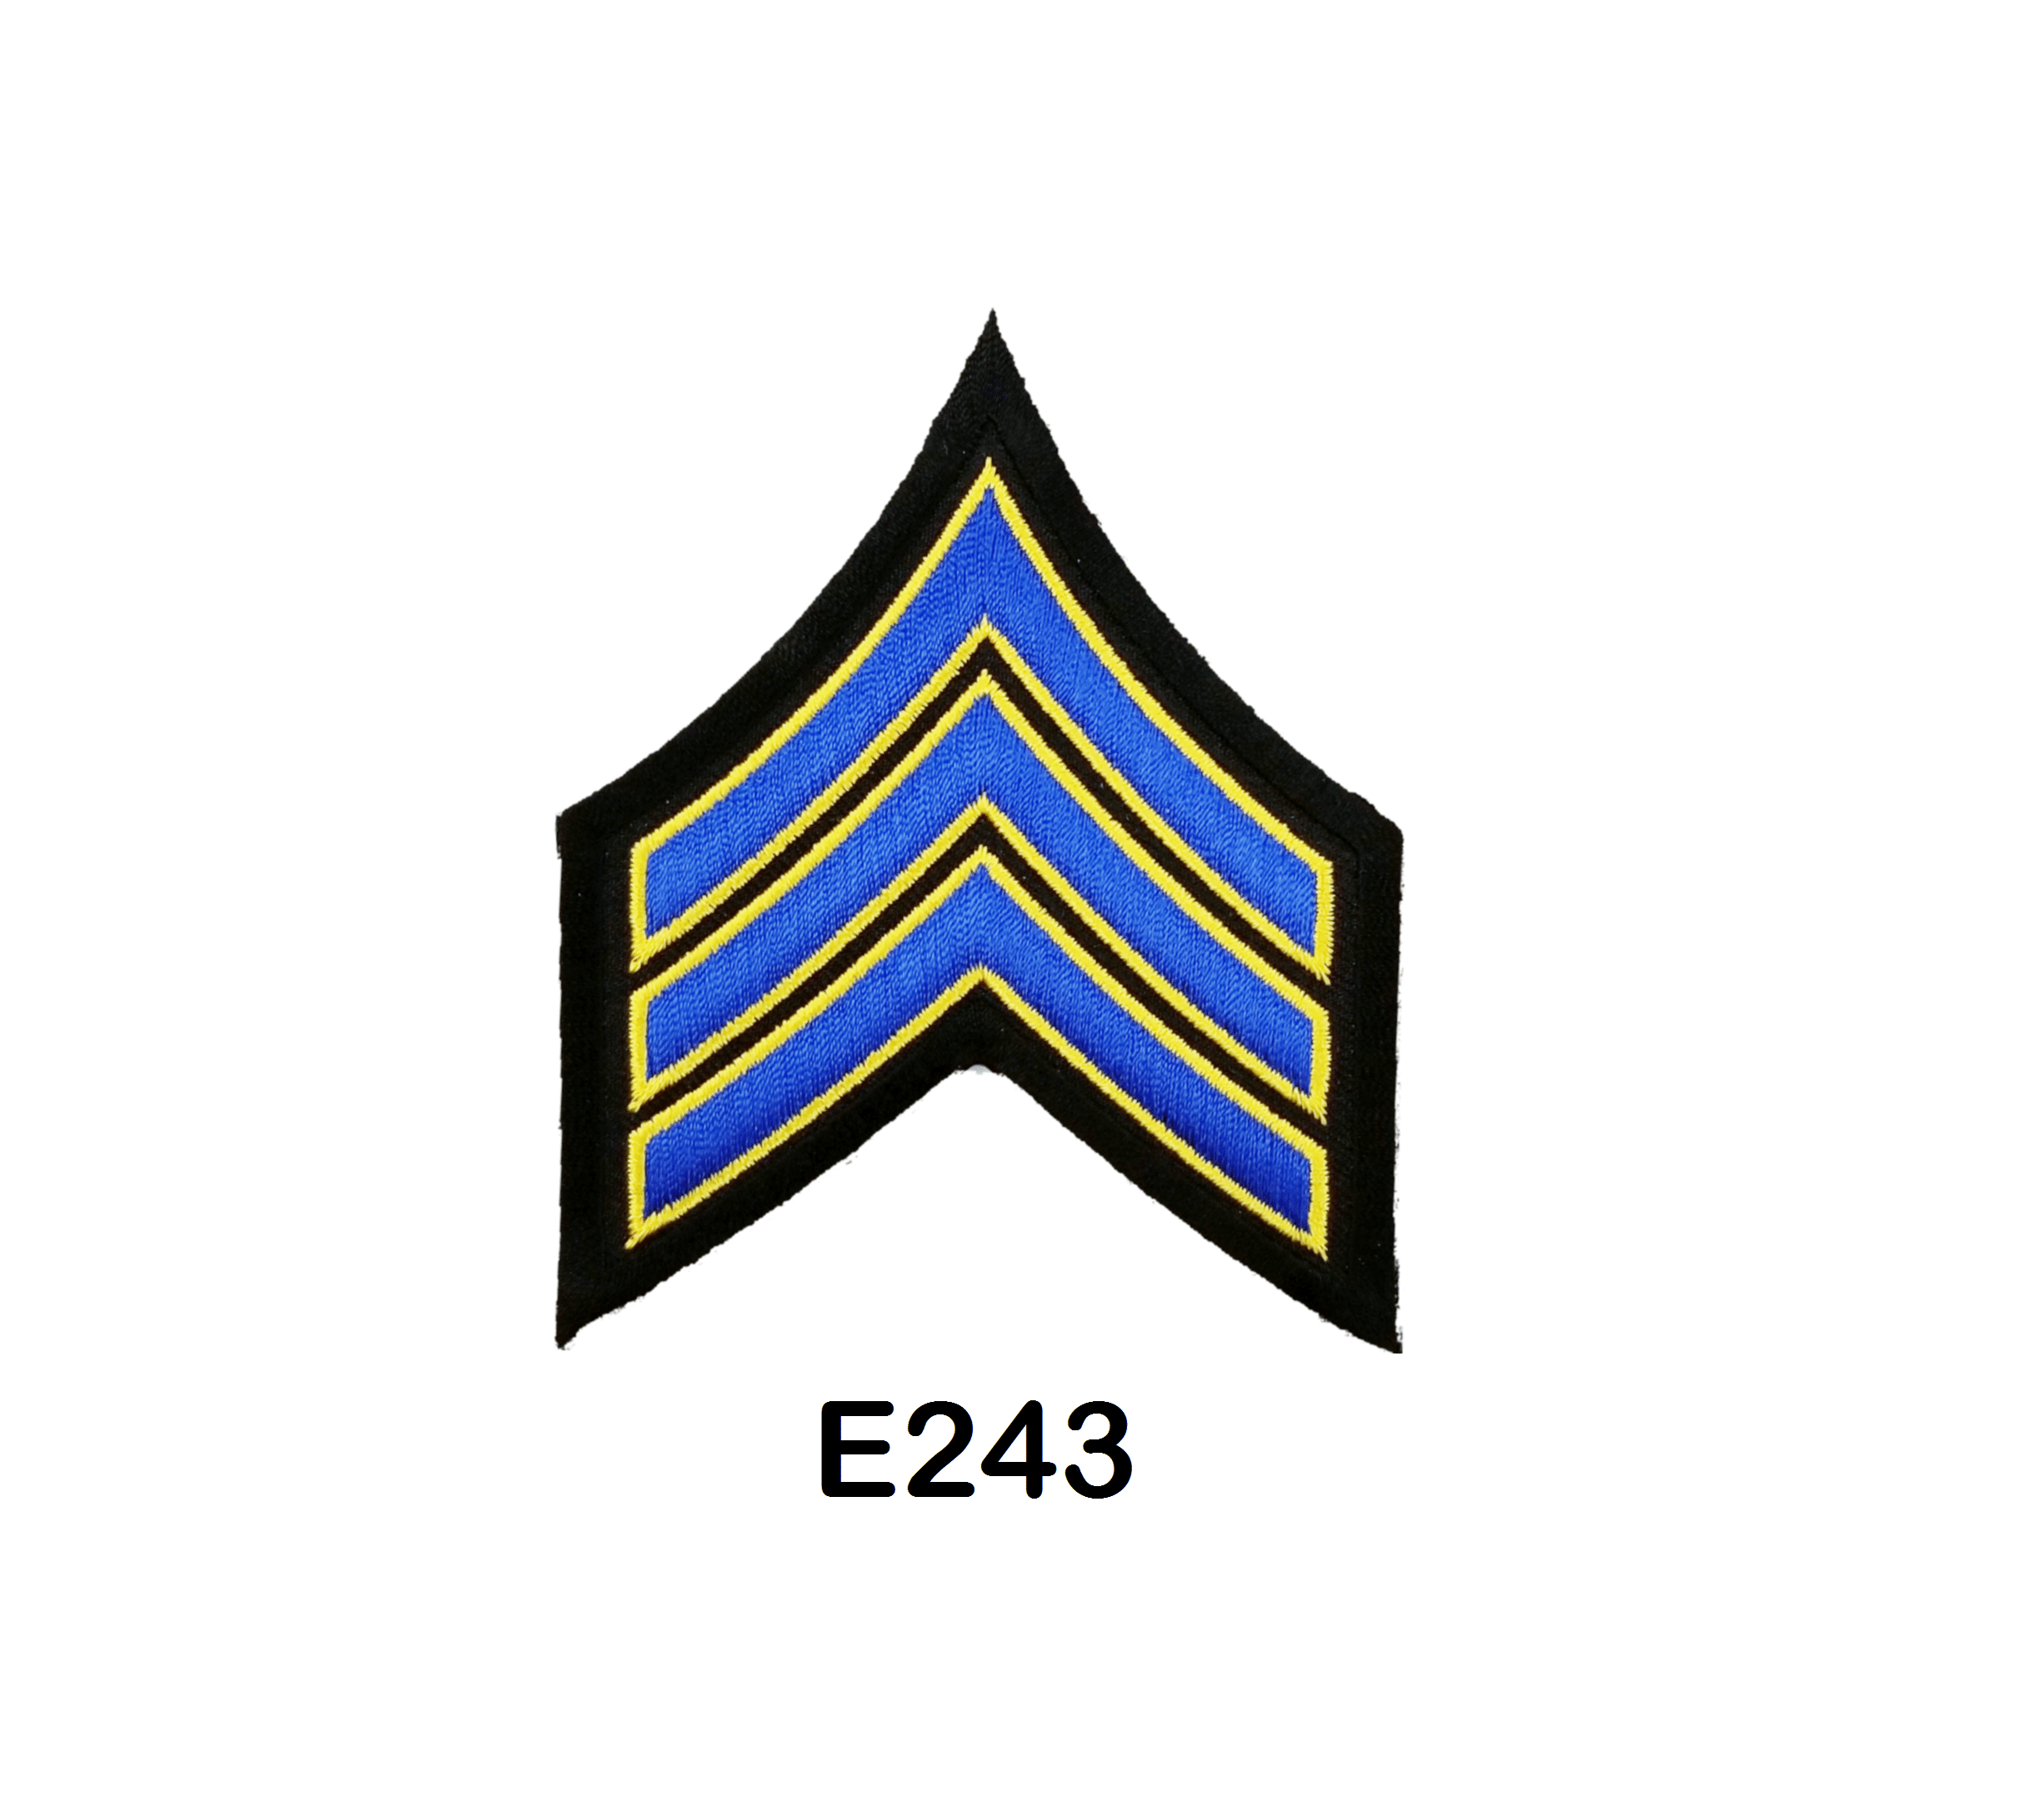 pair-of-sergeant-chevron-patches-emblems-cal-uniforms